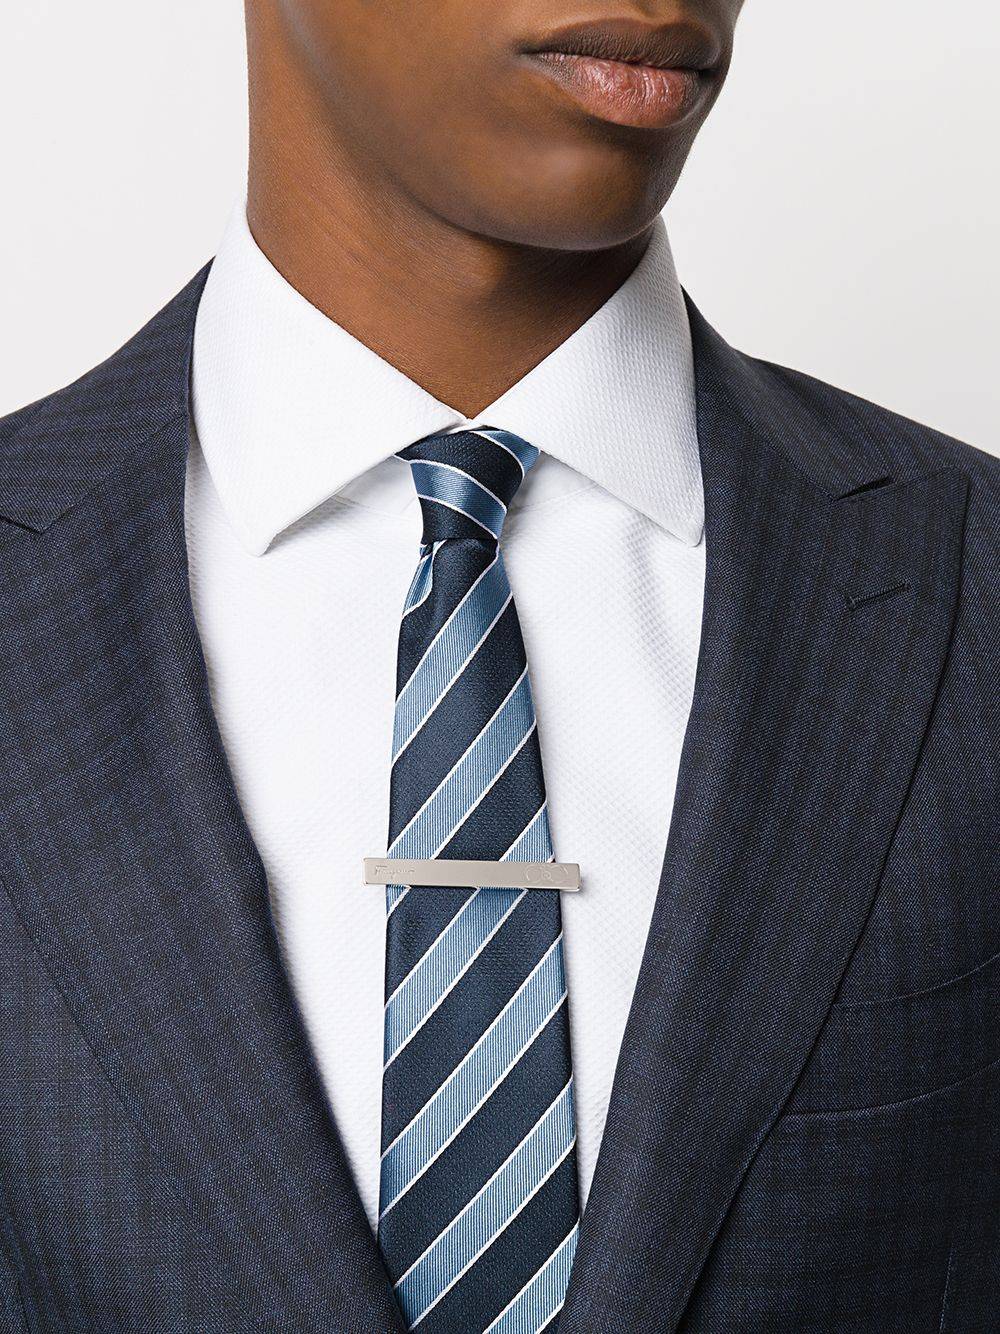 Как носить зажим для галстука с цепочкой?